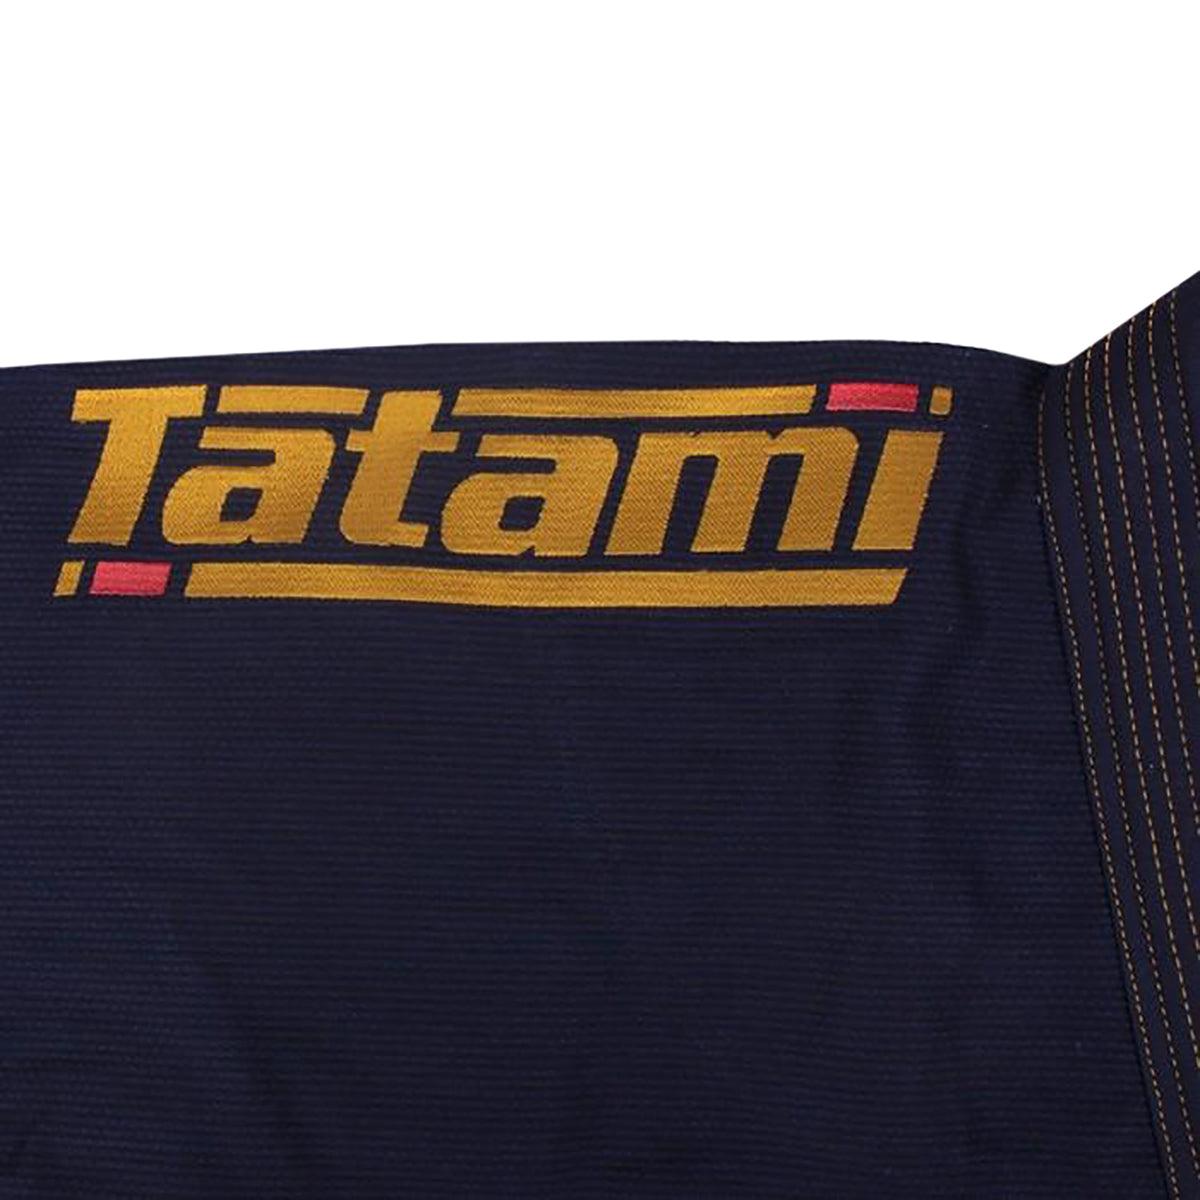 Tatami Fightwear Estilo 6.0 Premium BJJ Gi Tatami Fightwear